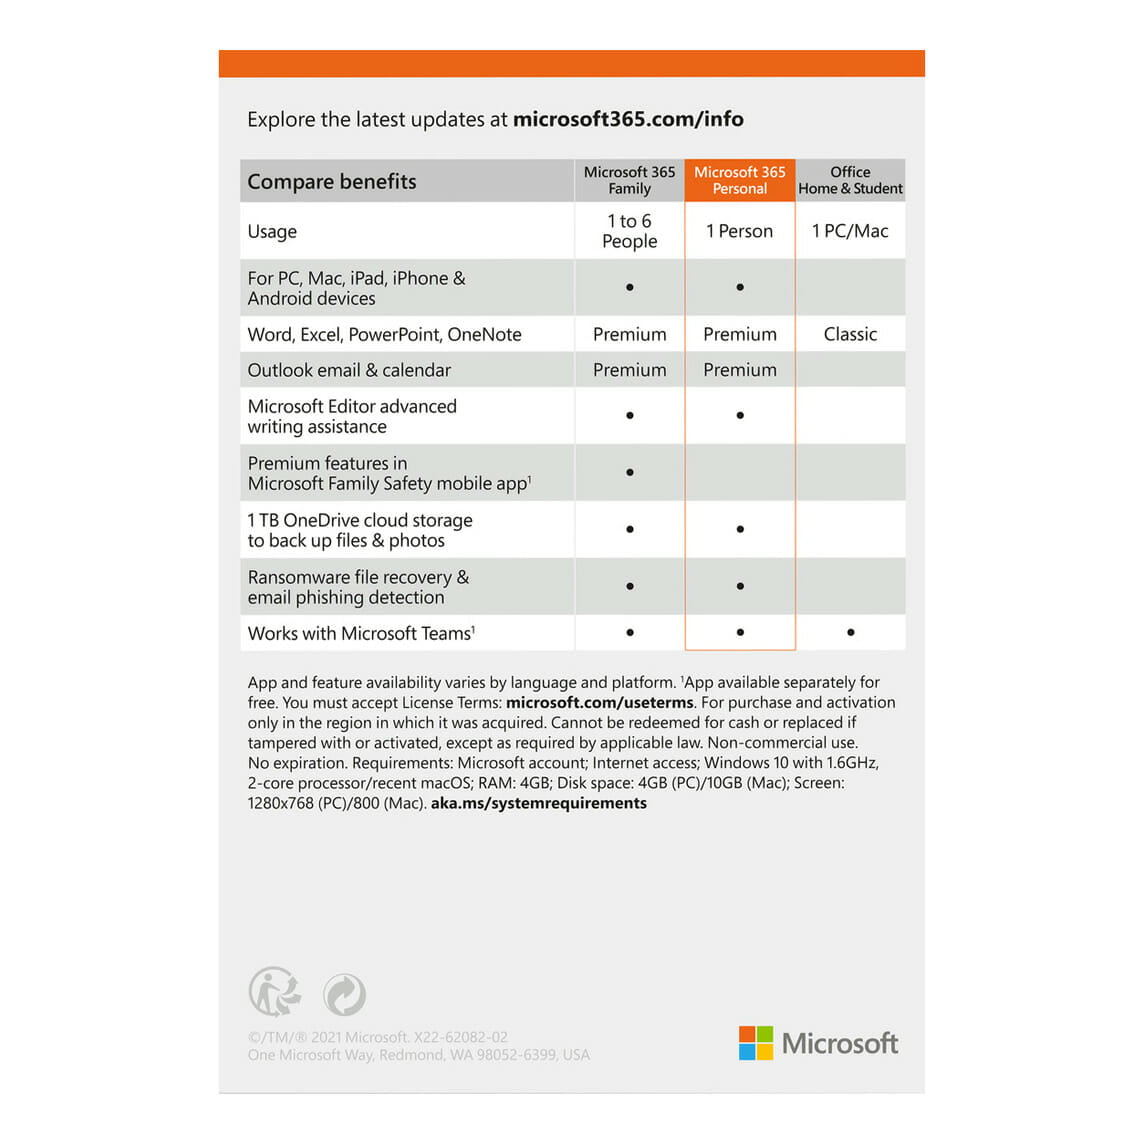 Microsoft 365 Personal (Suscripción de un año) - Compudemano